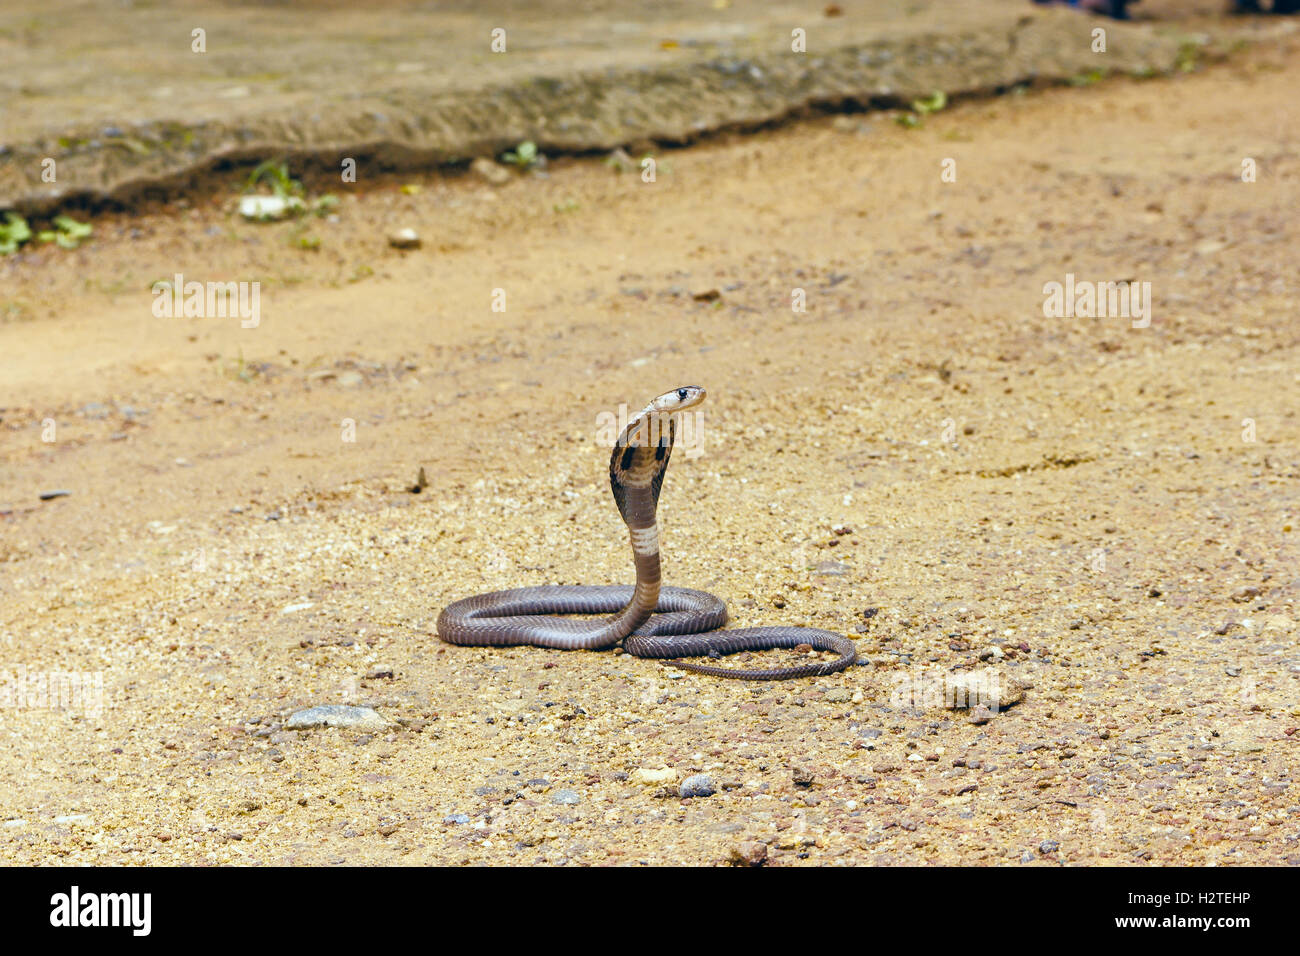 King Cobra Ophiophagus hannah Stock Photo